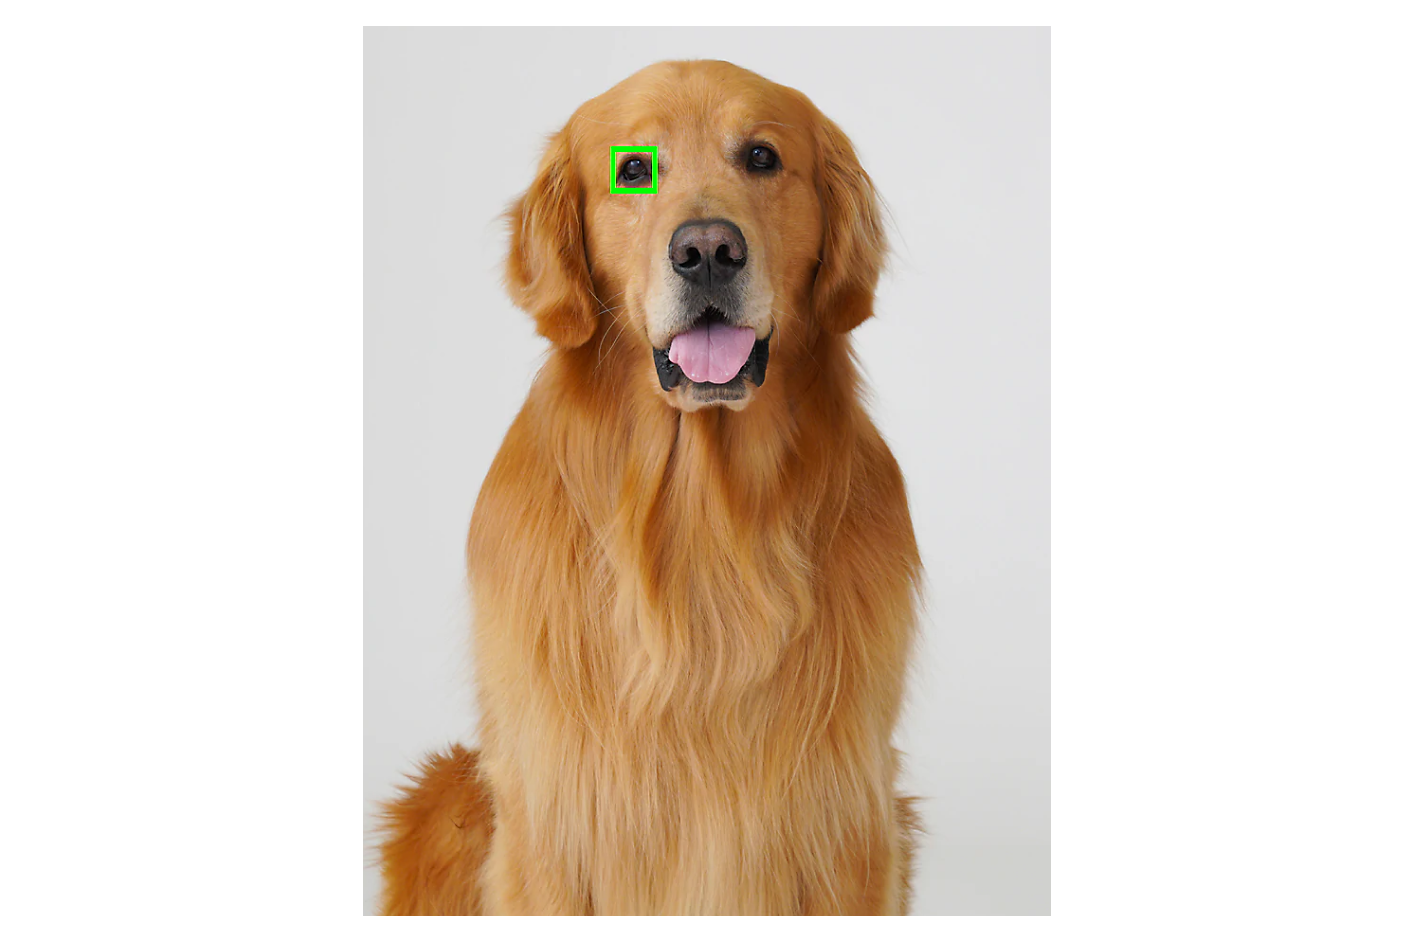 สุนัขพันธุ์โกลเด้น รีทริฟเวอร์นั่งพิงฉากหลังสีเทา พร้อมกรอบสี่เหลี่ยมสีเขียวที่ดวงตาข้างหนึ่ง